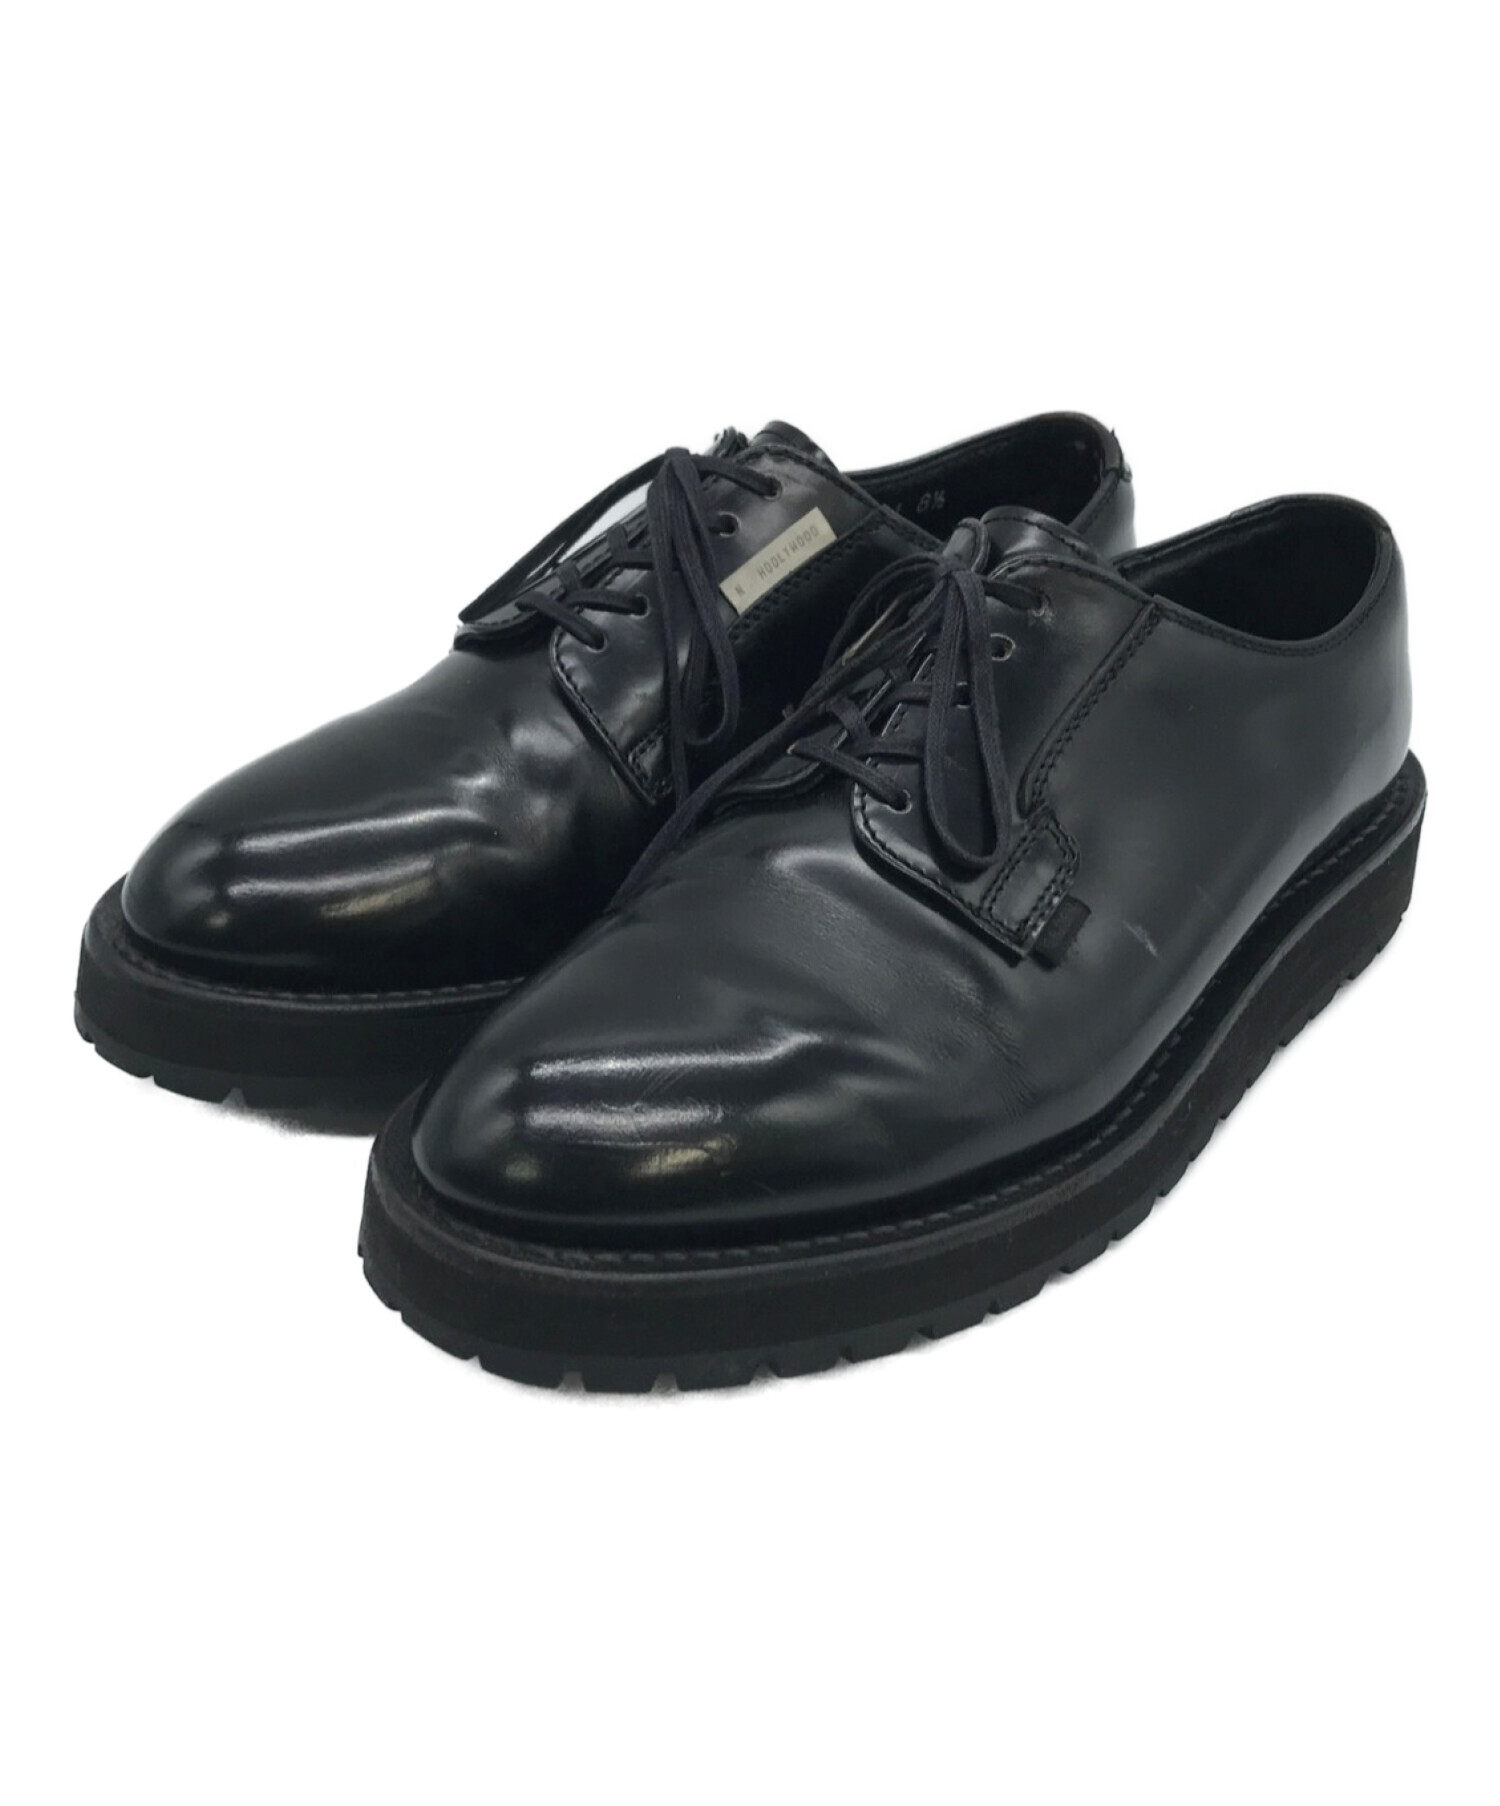 N.HOOLYWOOD×Danner (エヌハリウッド×ダナー) Postman Shoes/ポストマンシューズ ブラック サイズ:8 1/2